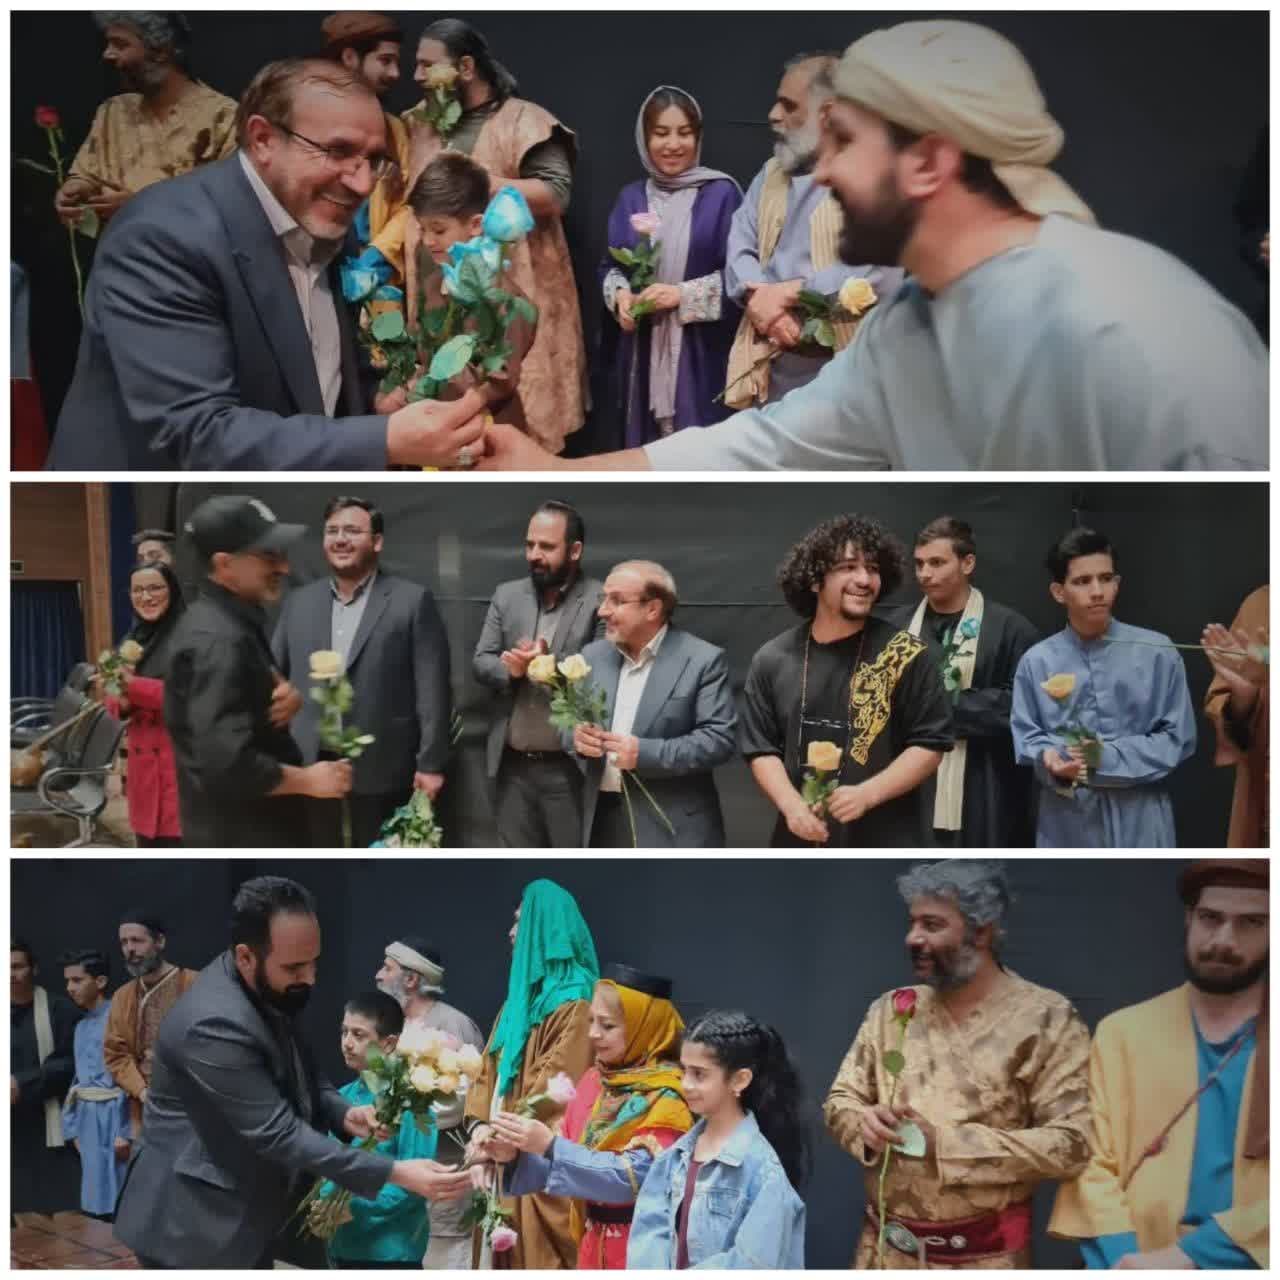  بازدید دکتر علی حدادی به همراه مهندس افشاری از اجرای نمایش ((دروگبرویک قرص نان)) در مجتمع فرهنگی هنری ۹ دی شهر هشتگرد